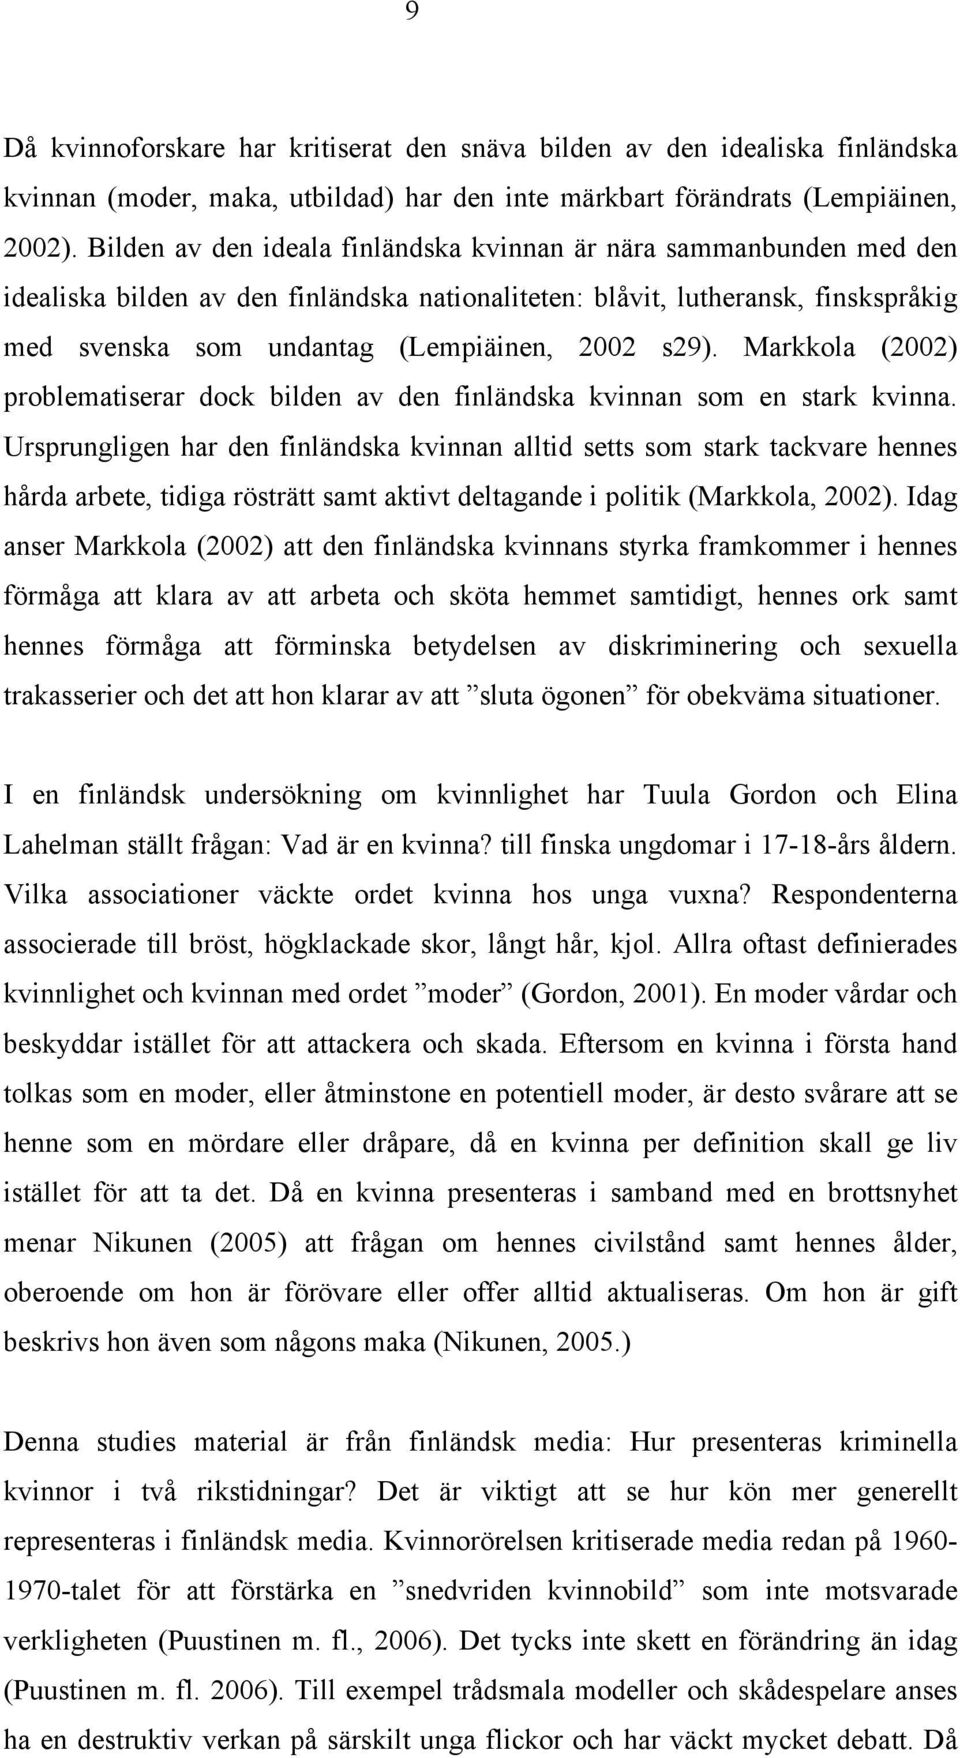 s29). Markkola (2002) problematiserar dock bilden av den finländska kvinnan som en stark kvinna.